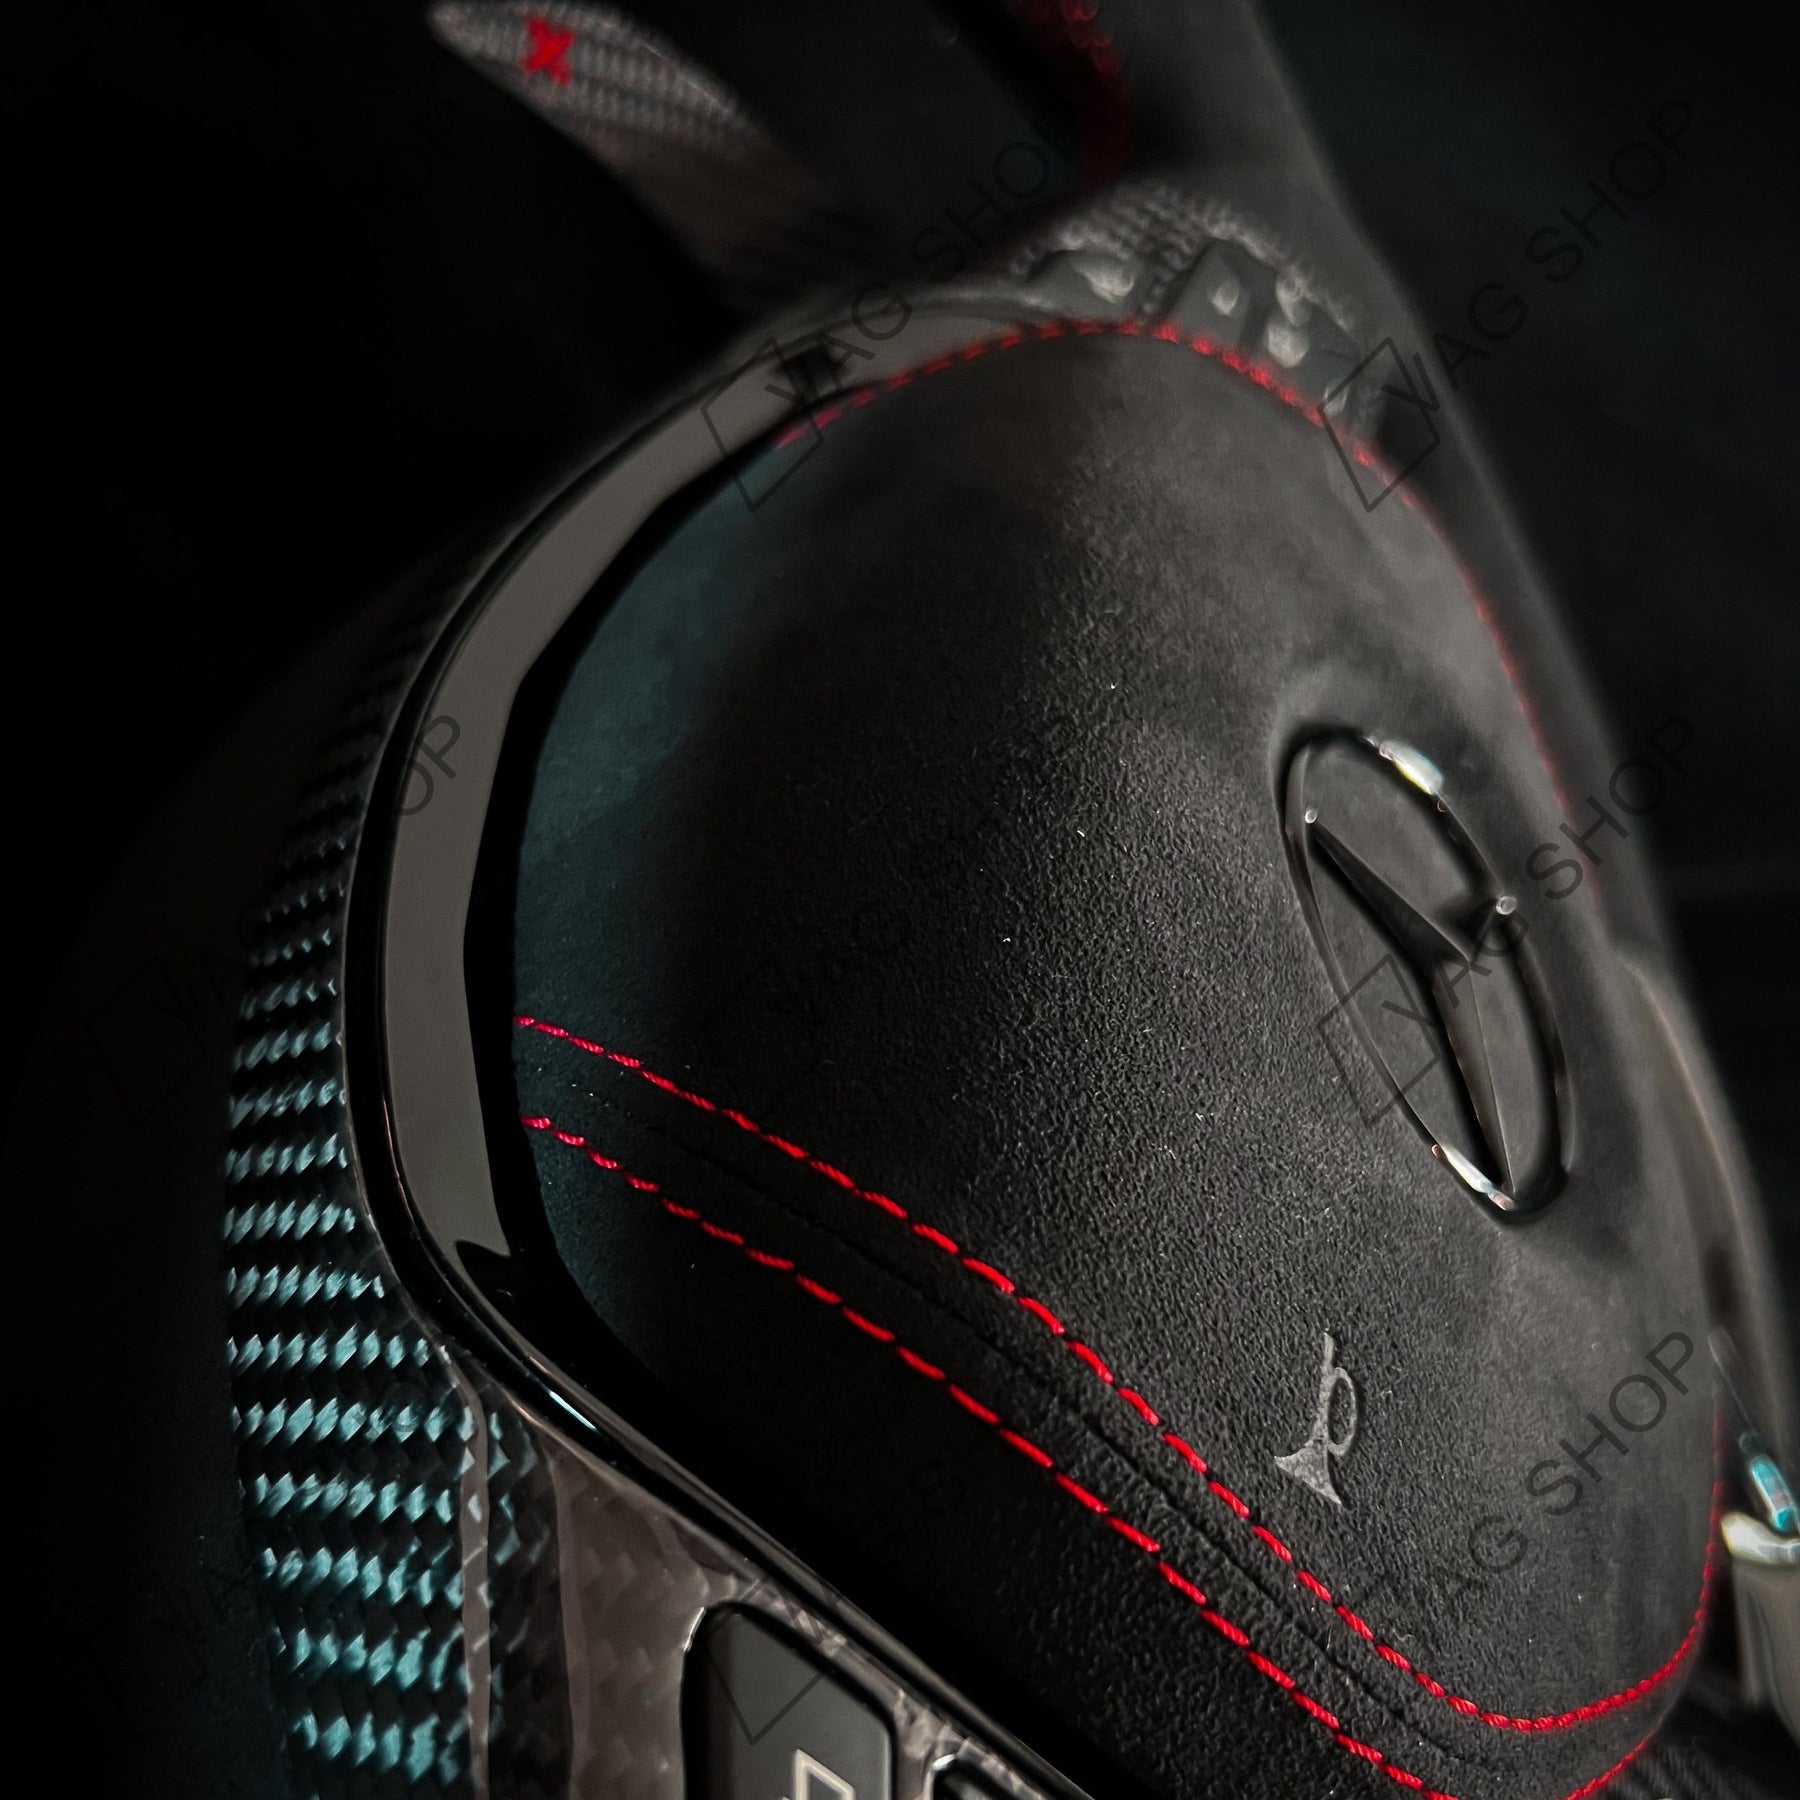 Volant Personnalisé Mercedes Benz AMG (2015-2021) (Nouvelle Génération –  CarCustom3D